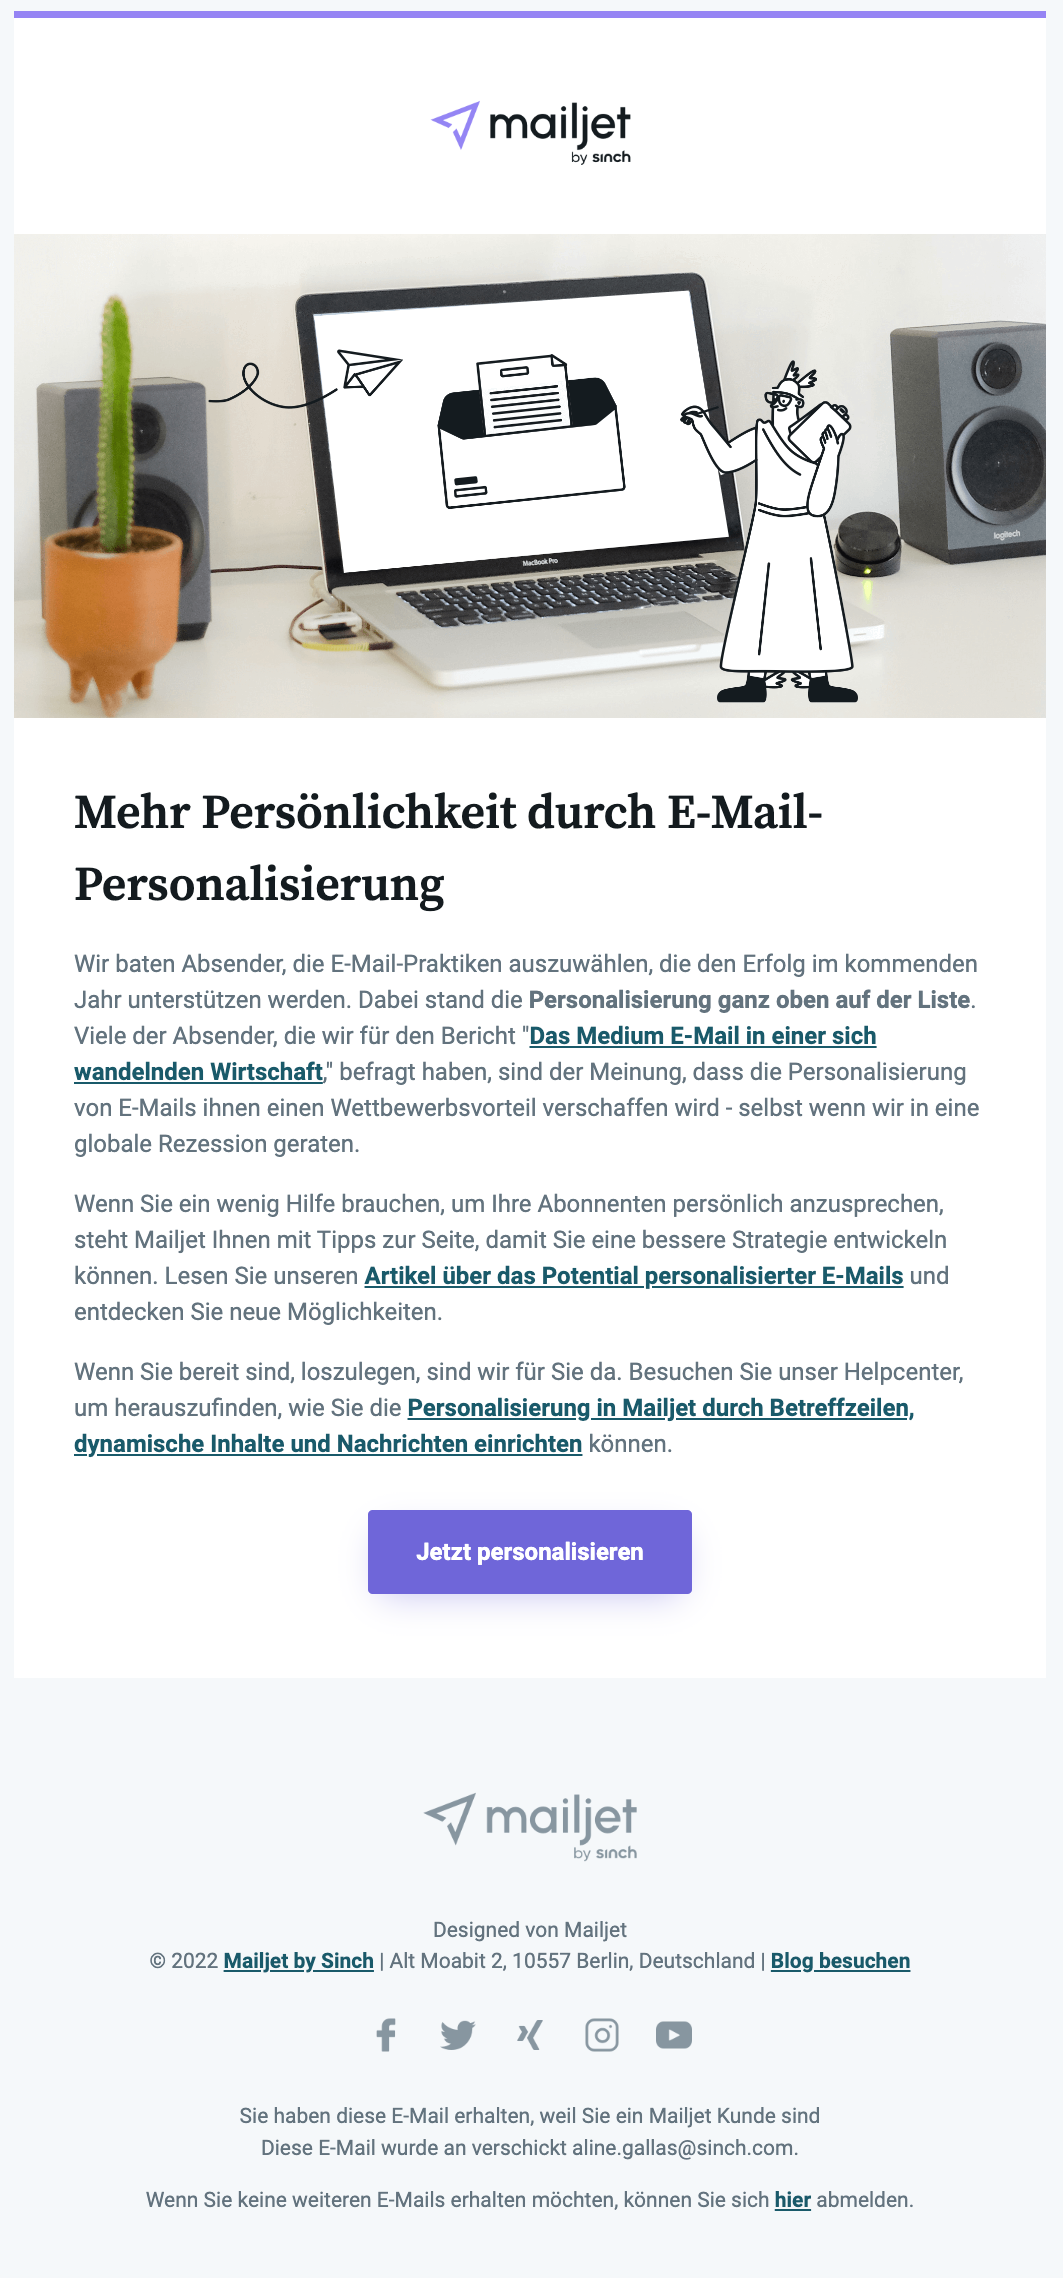 Beispiel eines Newsletters zum Thema E-Mail-Personalisierun